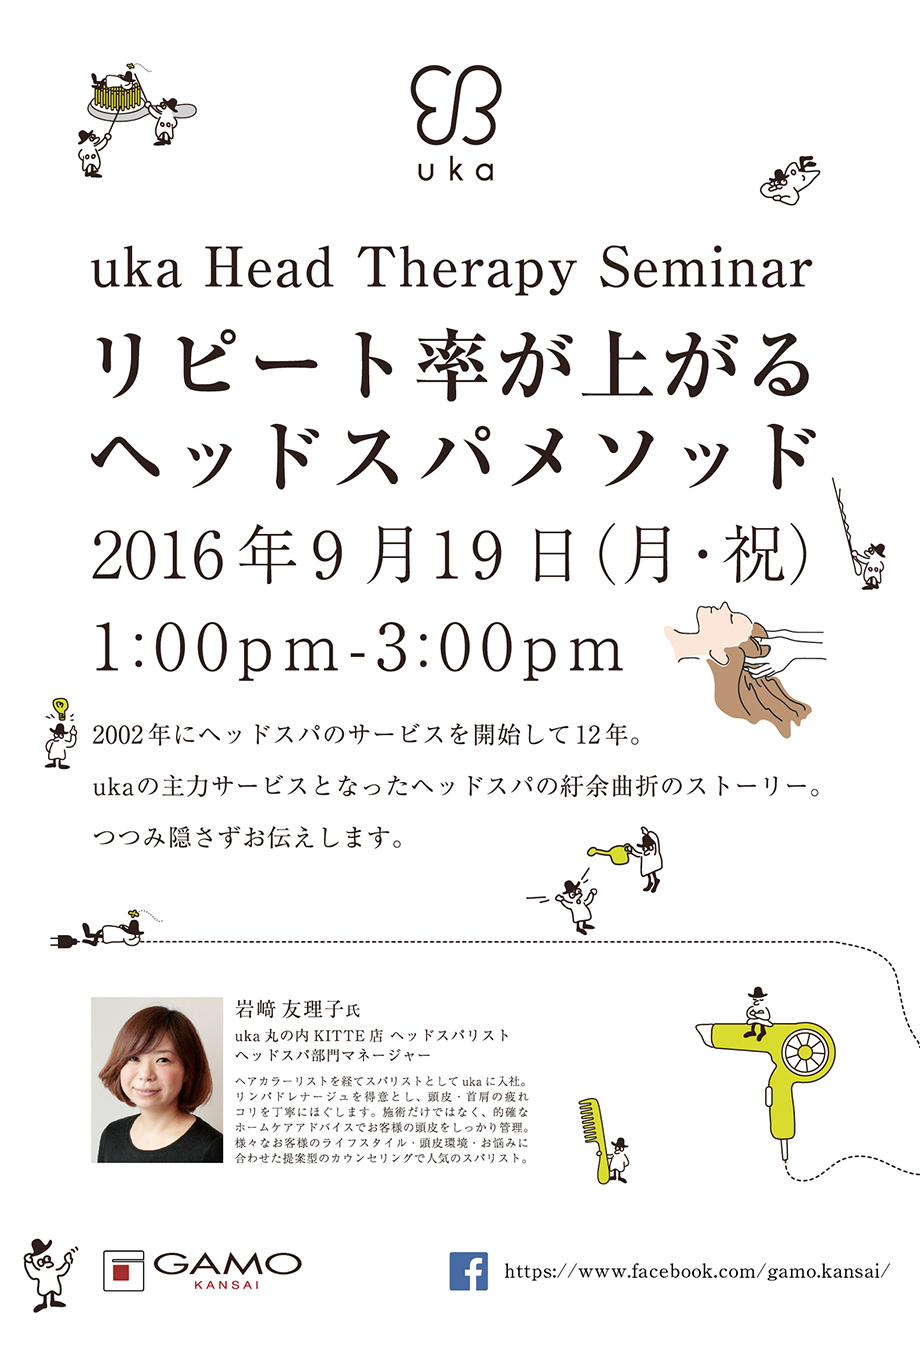 Uka Head Therapy Seminar ガモウ関西